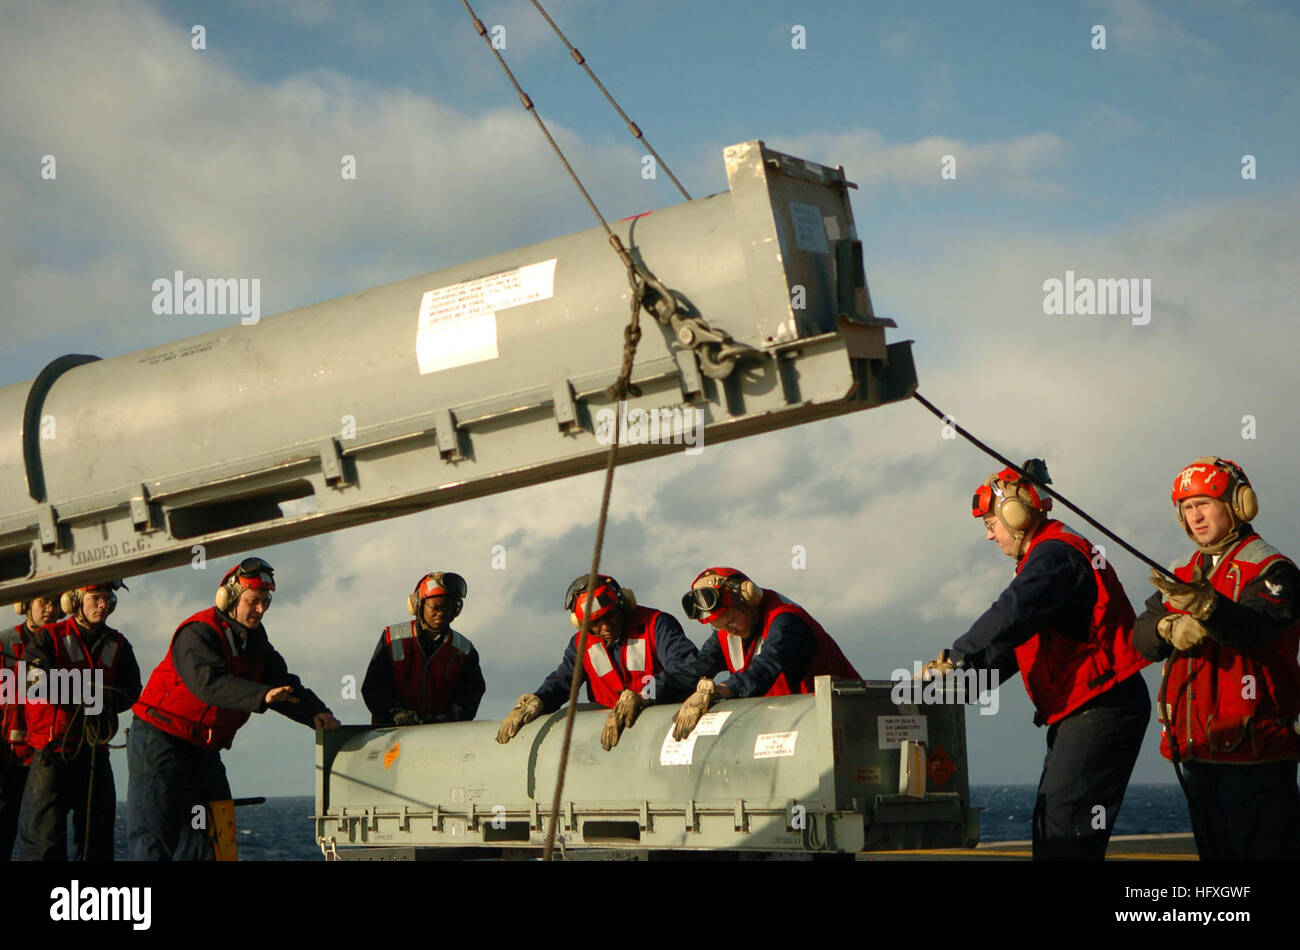 051206-N-3488C-021 South China Sea (6. Dezember 2005) - Feuer Controlmen stabilisieren einen RIM-7 NATO Sea Sparrow Missile Container, wie es auf dem Flugdeck an Bord der konventionell angetriebenen Flugzeugträger USS Kitty Hawk (CV-63) angehoben wird. Die RIM-7 Sea Sparrow ist ein mittlerer Reichweite, Krisenreaktionsmechanismus, Rakete Waffensystem, das die Fähigkeit zu zerstören feindliche Flugzeuge, Anti-Schiff-Raketen und Oberfläche Rakete Plattformen zur Verfügung stellt. Kitty Hawk und eingeschifften Carrier Air Wing Five (CVW-5) sind derzeit Durchführung von Operationen im westlichen Pazifischen Ozean. Foto: U.S. Navy PhotographerÕs Mate 3rd Class Jonathan C Stockfoto